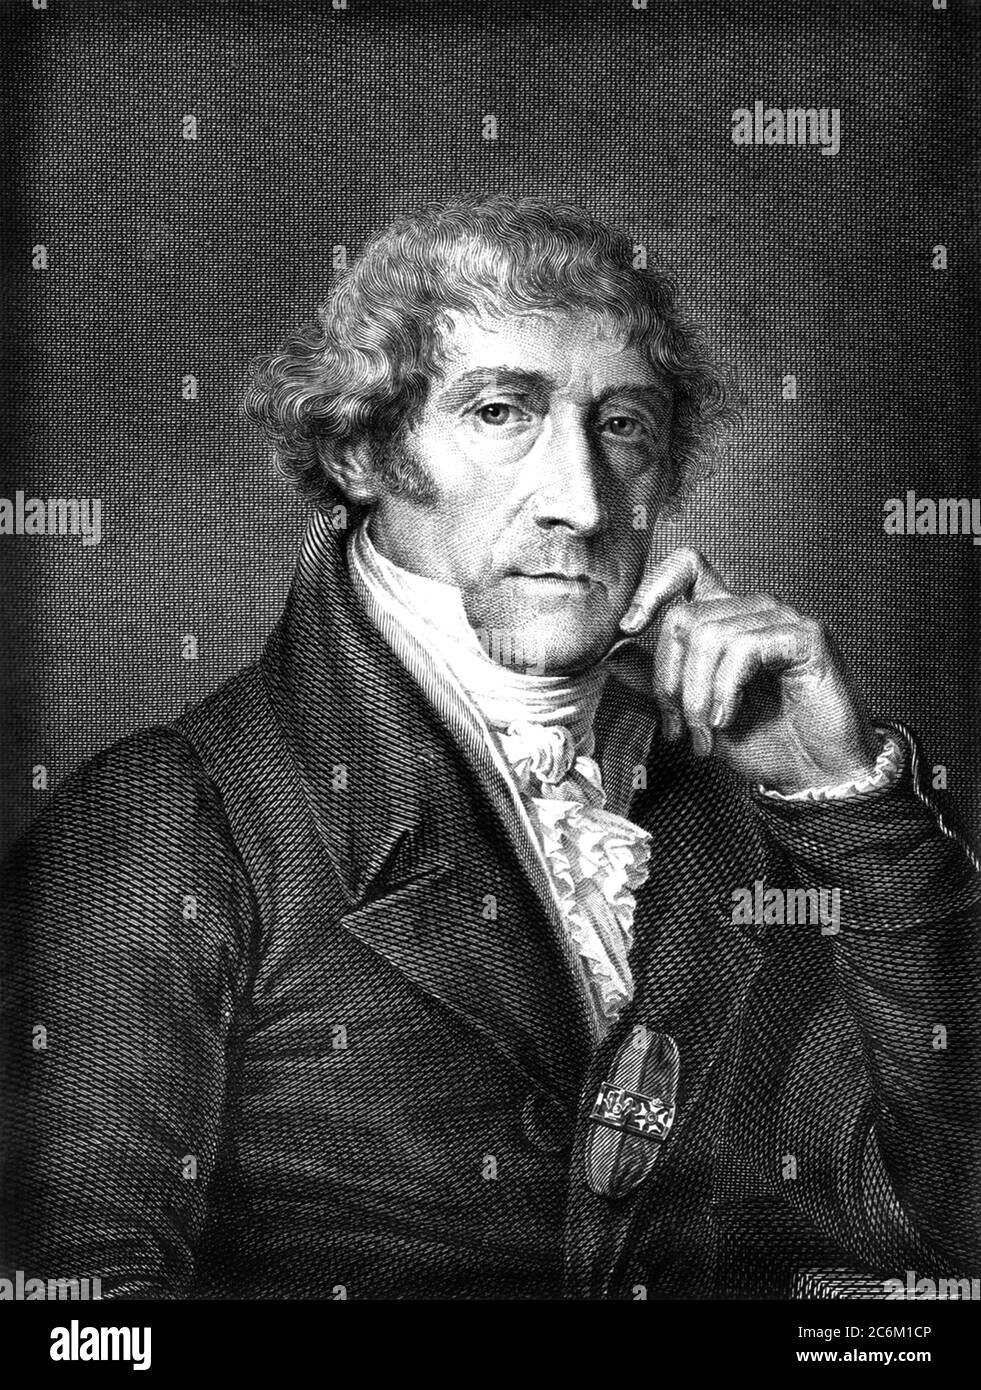 1800 Ca, ITALIEN : der italienische Arzt, Anatom und Chirurg ANTONIO SCARPA ( 1752 - 1832 ). Portrait von Unbekannter Graveur . - foto storiche - foto storica - scienziato - Wissenschaftler - Portrait - ritratto - SCRITTORE - CHIRURGIE - CHIRURGO - CHIRURGIA - DOTTORE - MEDICO - MEDICINA - Medizin - ANATOMISTA - ANATOMIE - ANATOMIE - WISSENSCHAFT - Inzisione - Illustration --- Archivio GBB Stockfoto